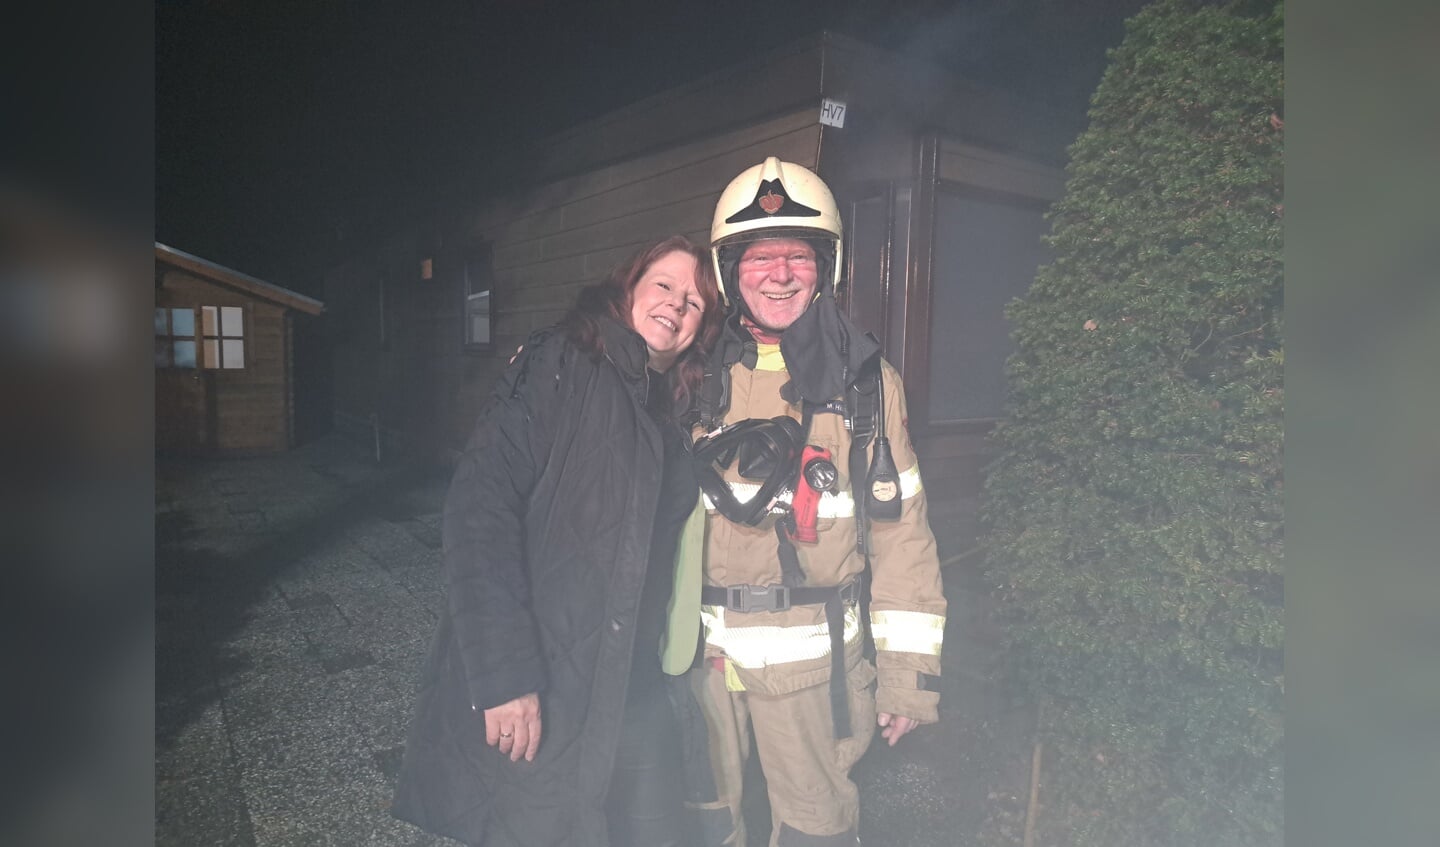 Brandweerman Manfred Hillen met echtgenote Anja bij de laatste uitruk. Foto: Kyra Broshuis